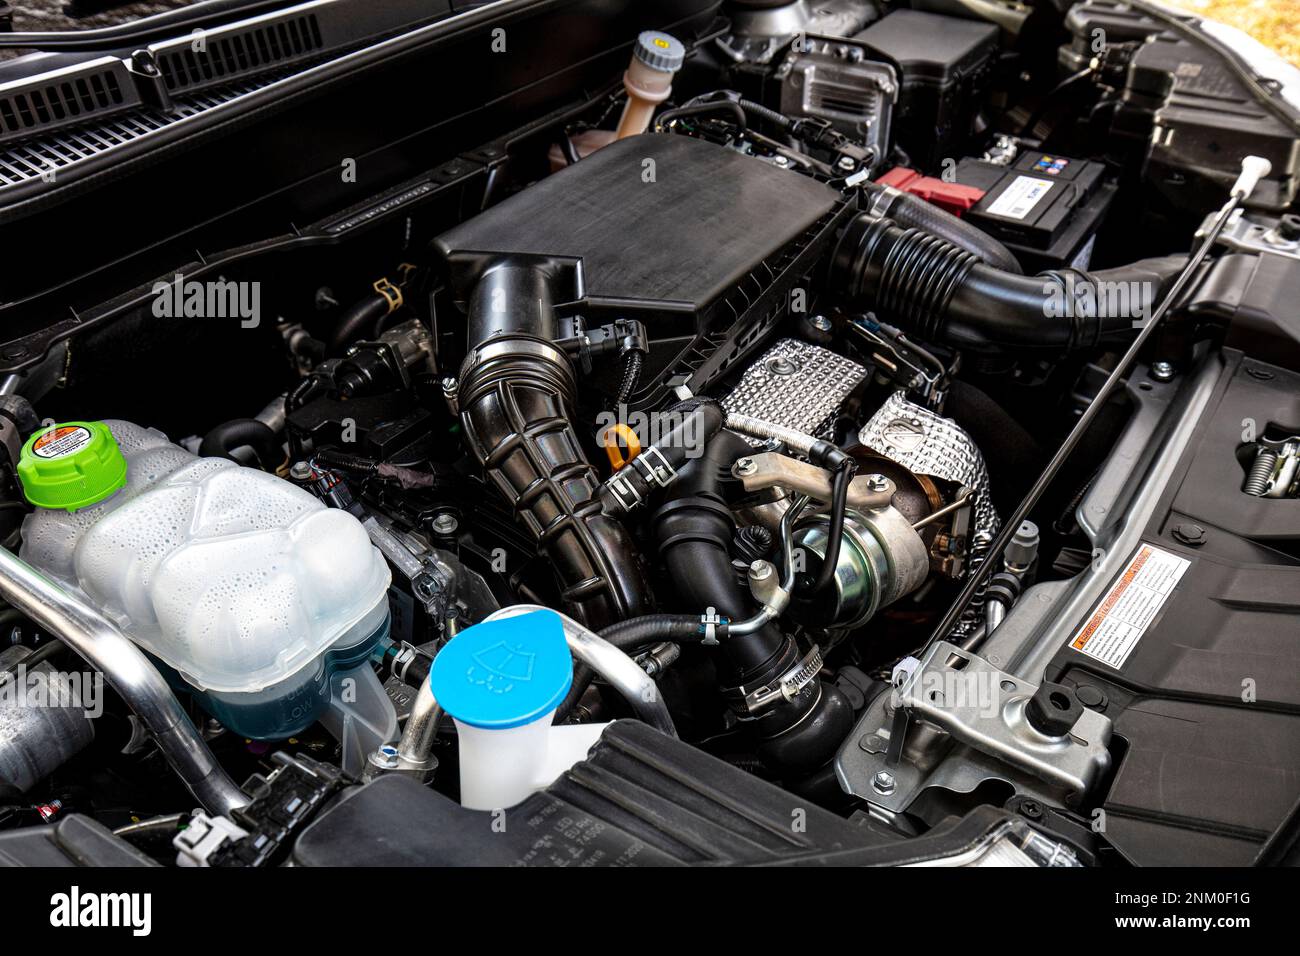 medium hybrid car engine background Stock Photo